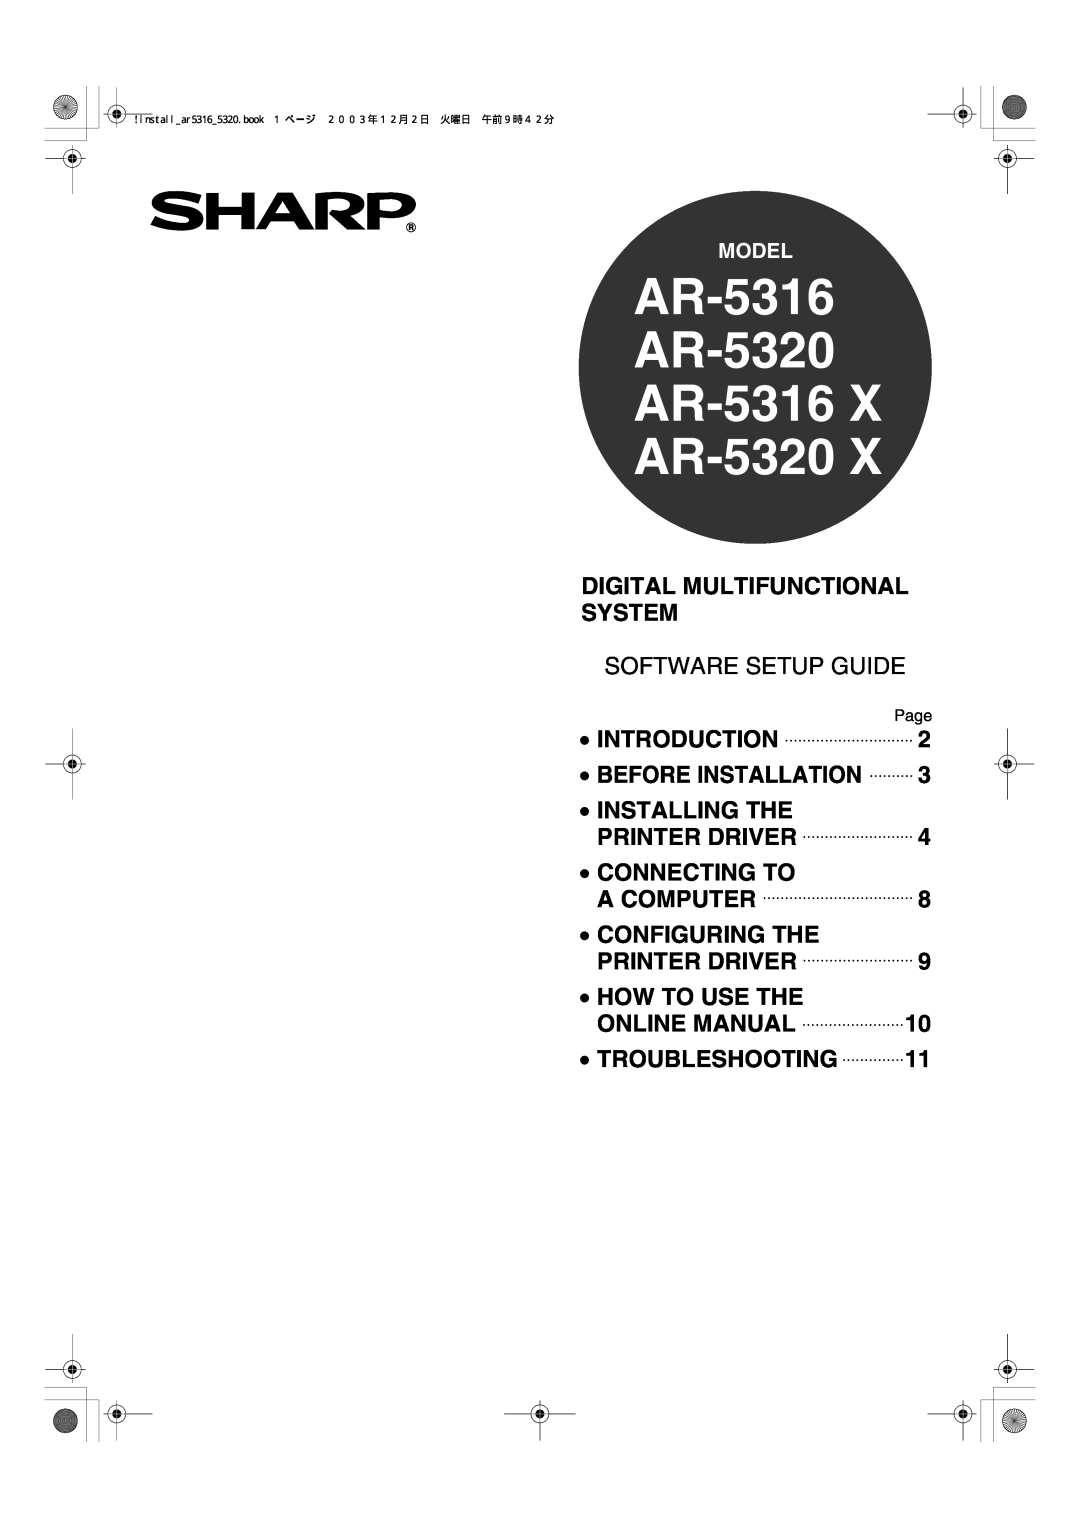 Sharp AR-5320 X, AR-5316 X setup guide AR-5316 AR-5320 AR-5316 AR-5320, Software Setup Guide 